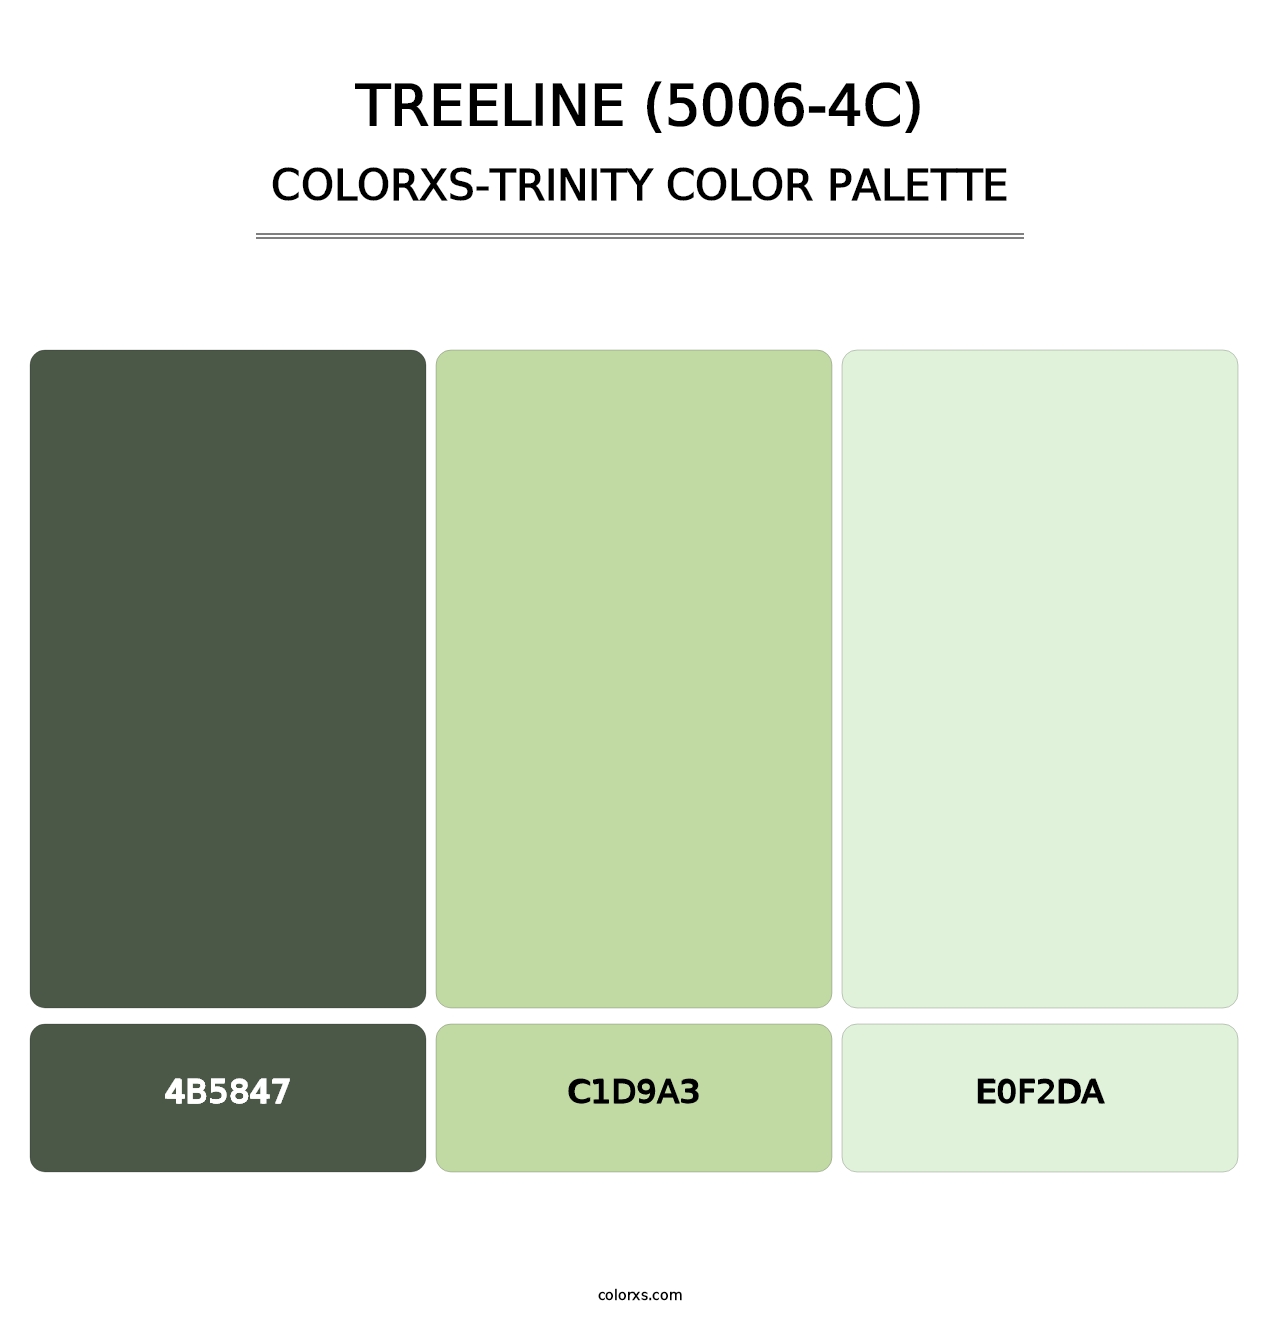 Treeline (5006-4C) - Colorxs Trinity Palette